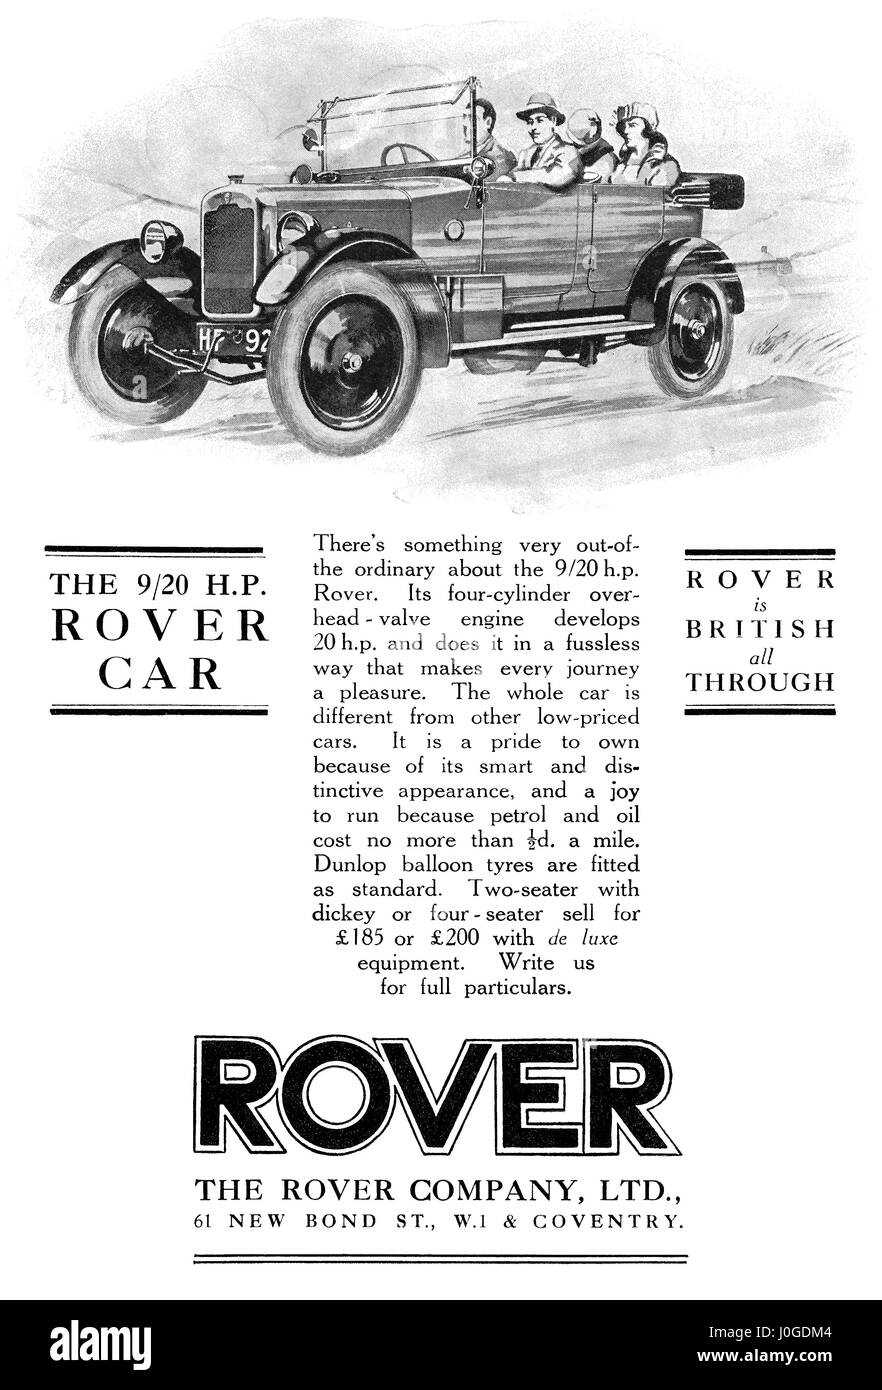 1925 British pubblicità per 9/20 H.P. Rover Auto. Foto Stock